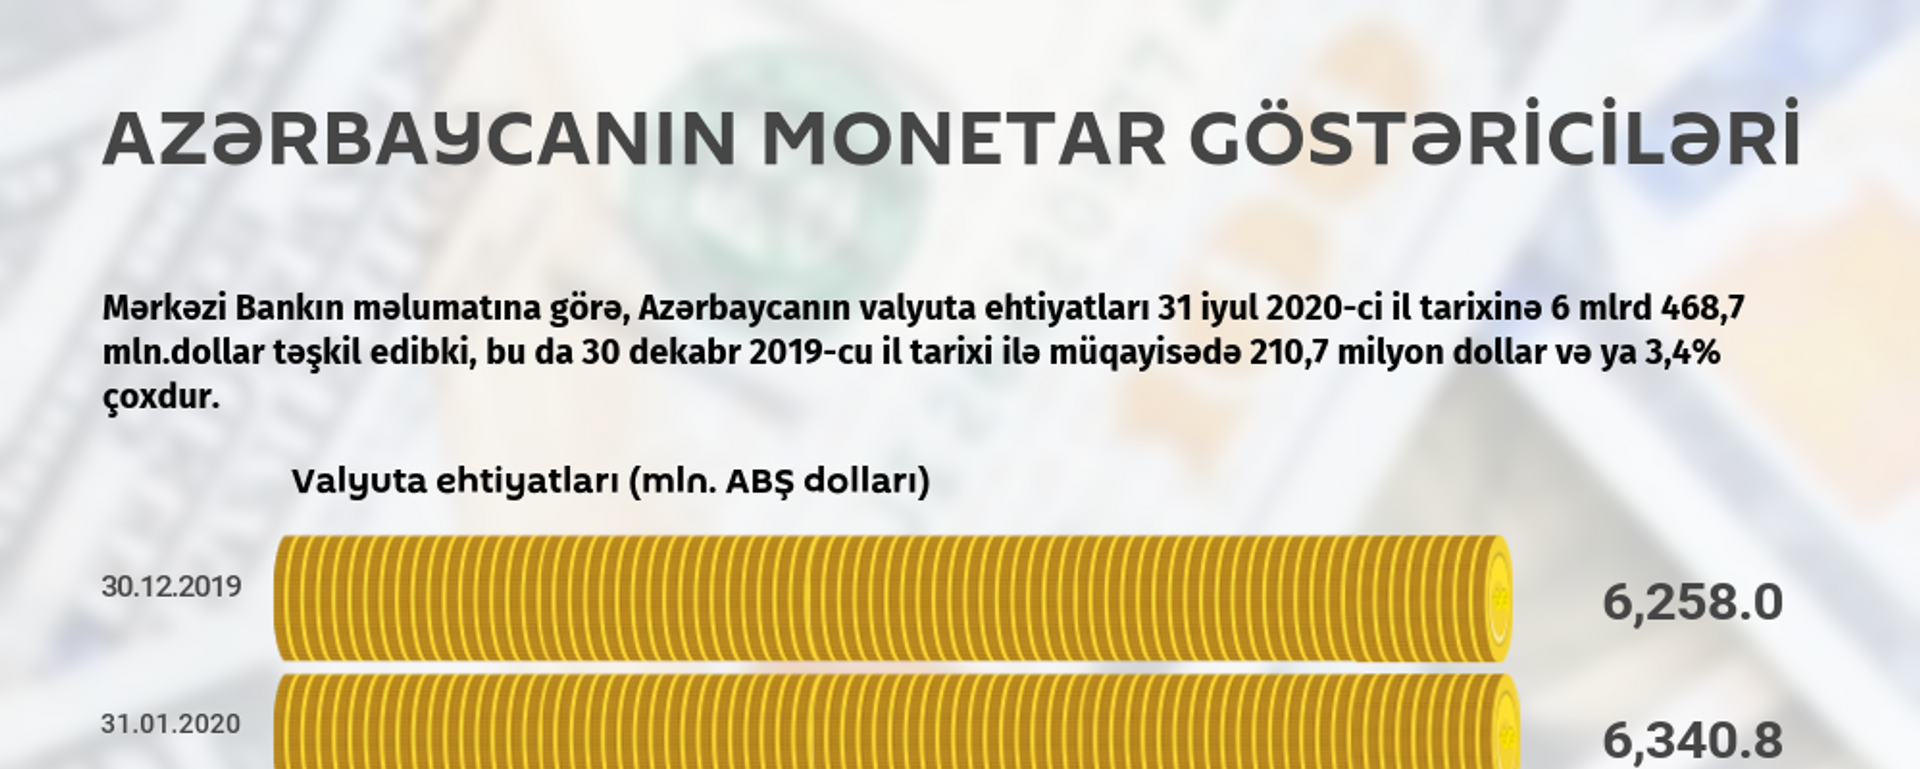 İnfoqrafika: Azərbaycanın monetar göstəriciləri - Sputnik Azərbaycan, 1920, 20.08.2020